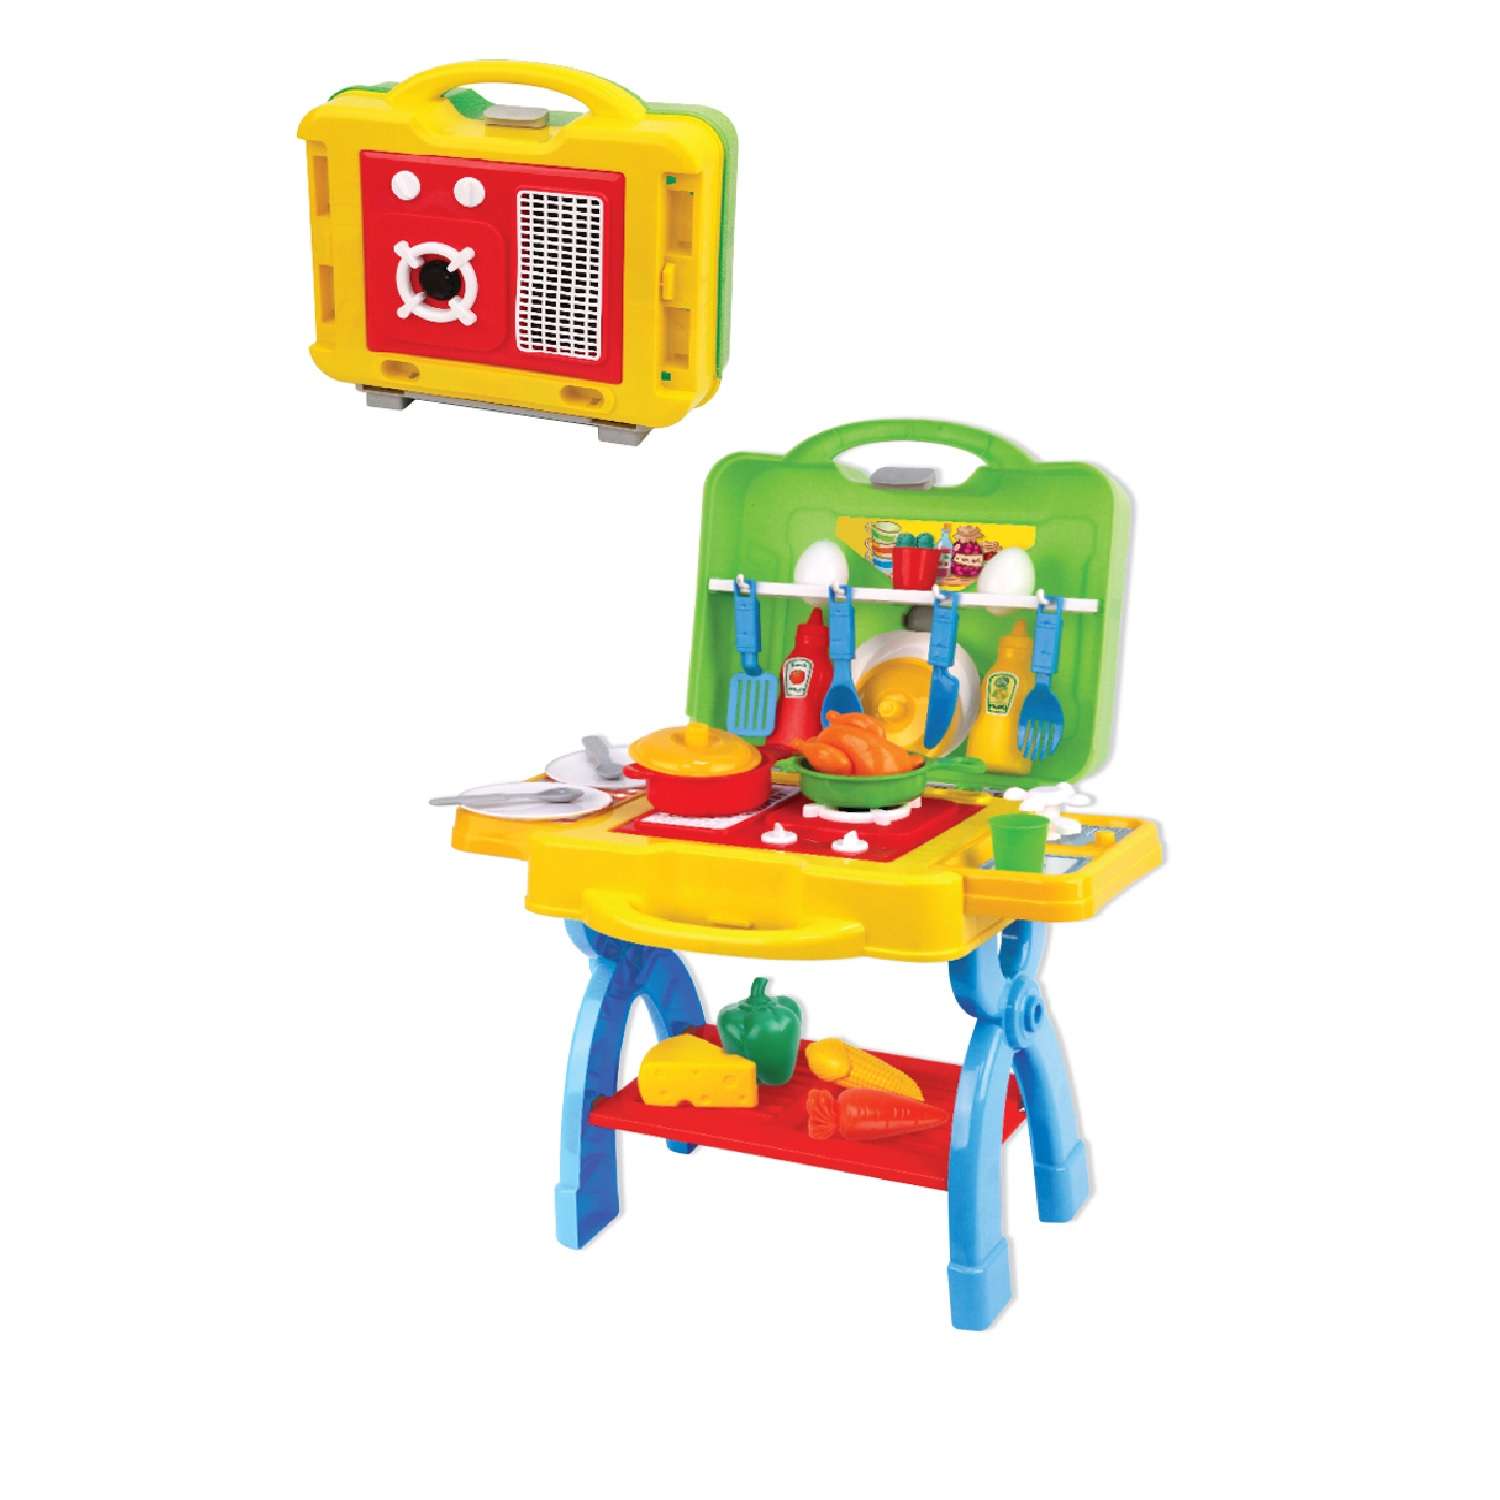 Мобильная детская кухня Green Plast игрушечная посудка и продукты - фото 3